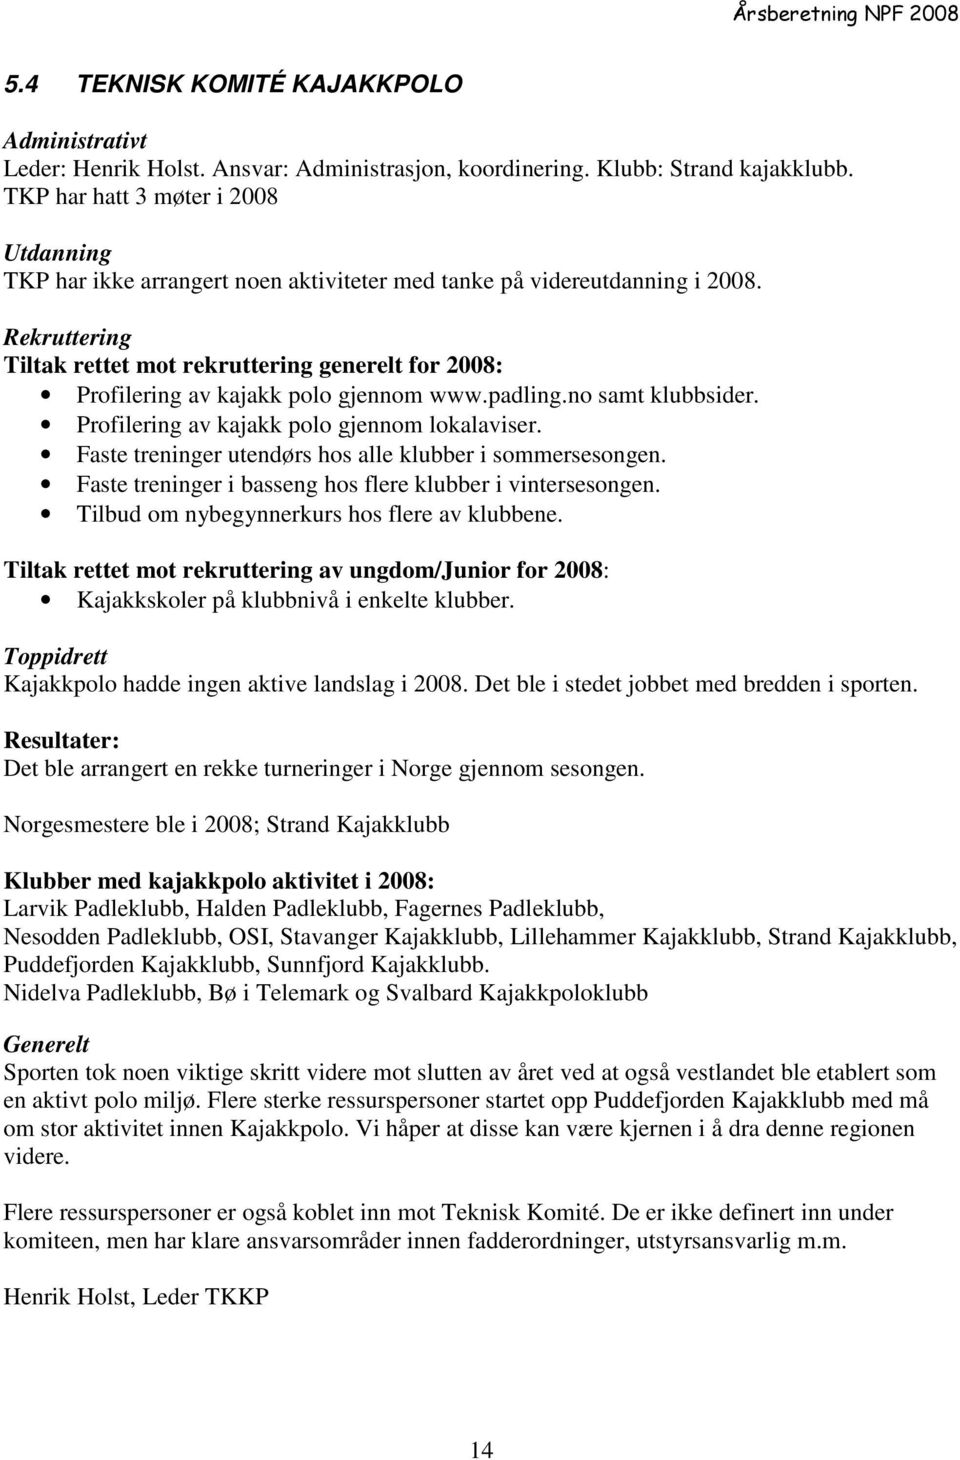 Rekruttering Tiltak rettet mot rekruttering generelt for 2008: Profilering av kajakk polo gjennom www.padling.no samt klubbsider. Profilering av kajakk polo gjennom lokalaviser.